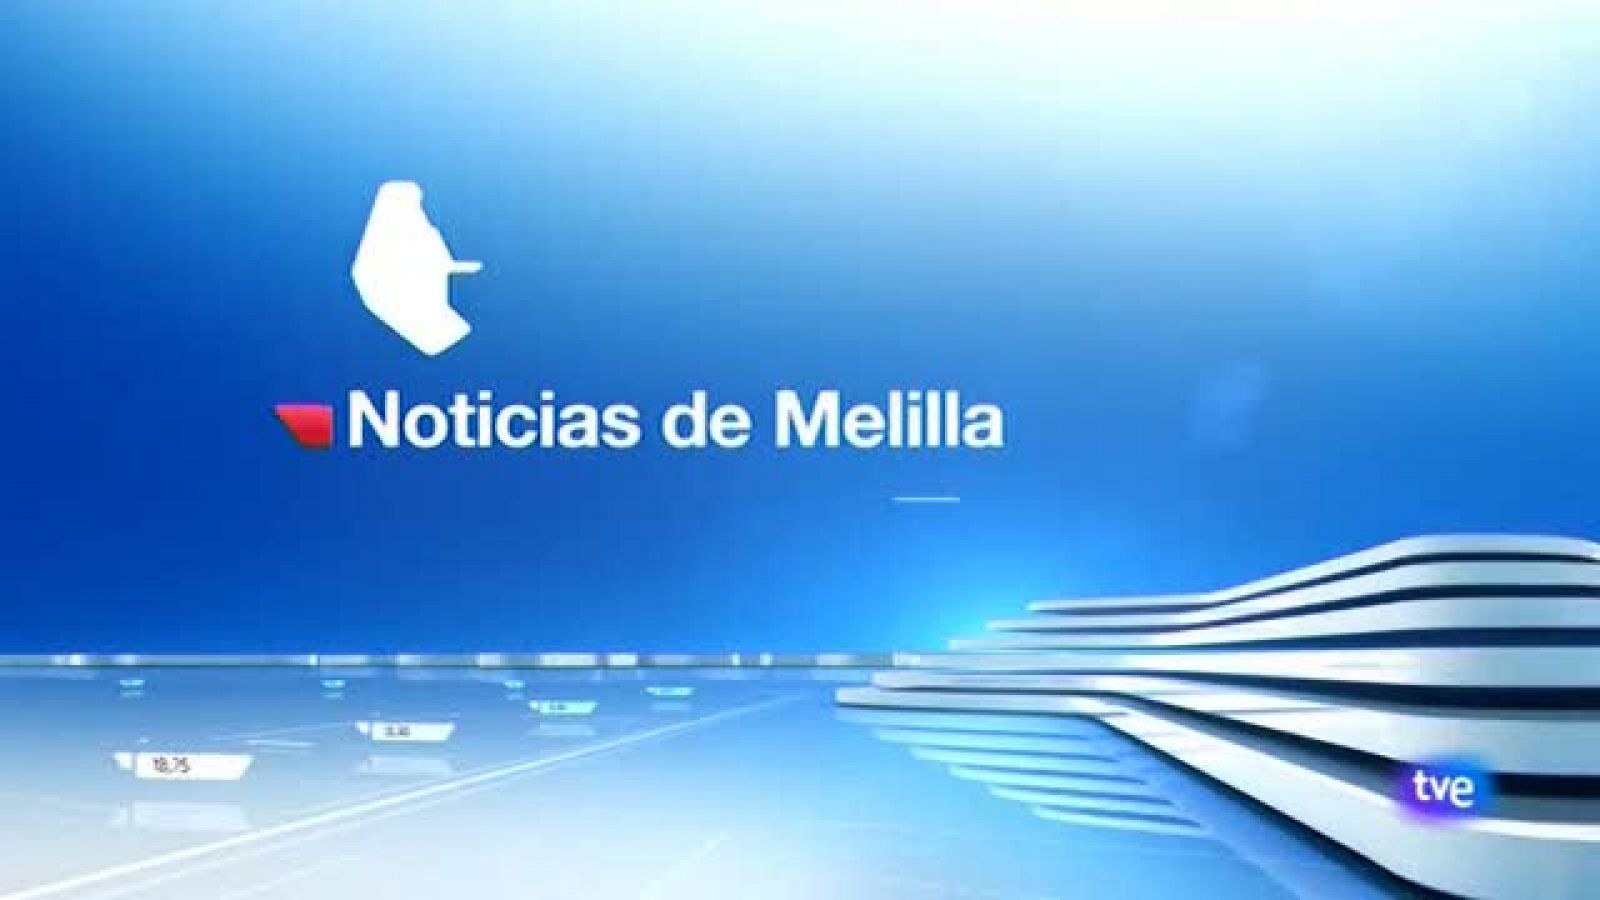 La noticia de Melilla - 17/11/20